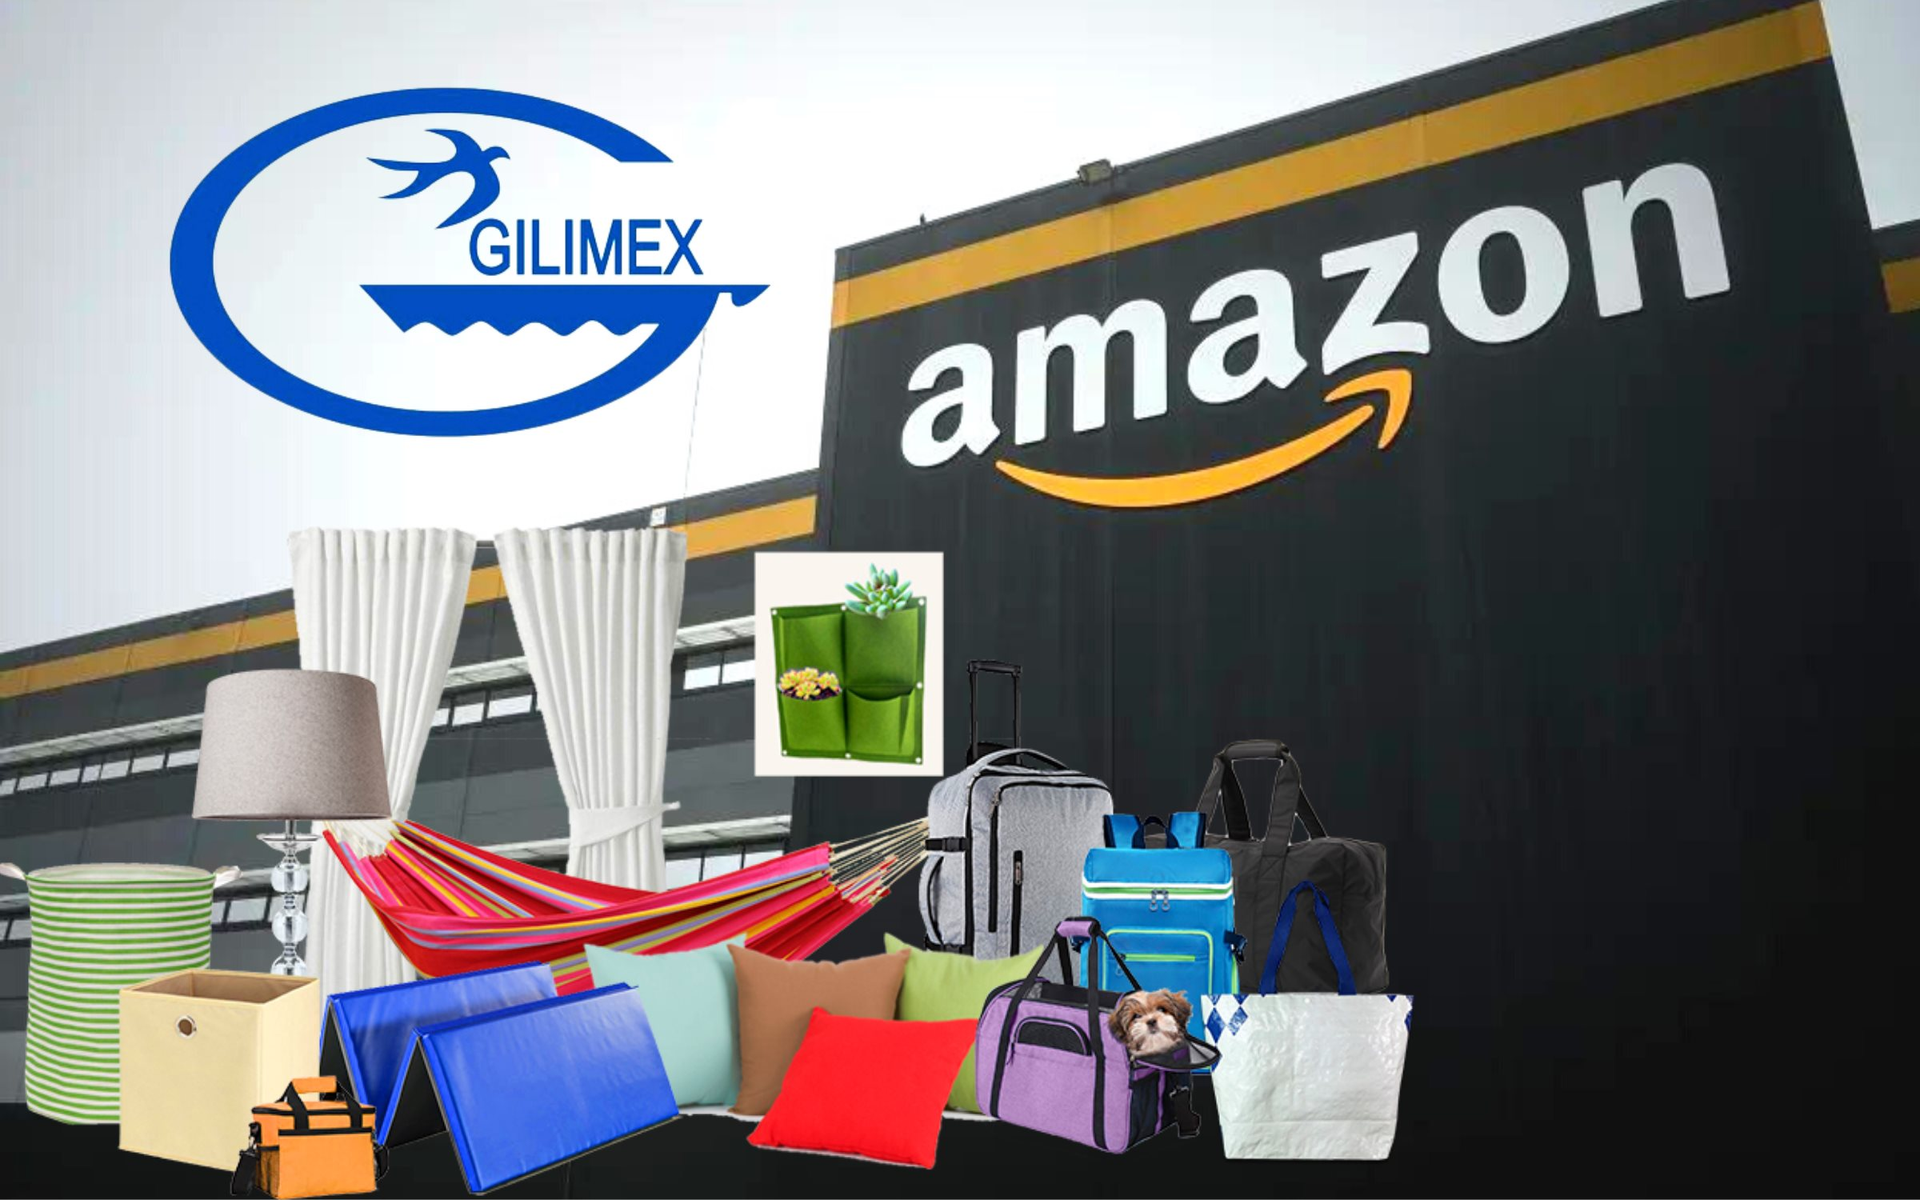 Trước khi đâm đơn kiện Amazon đòi 280 triệu USD, Gilimex đã mất cả nghìn tỷ doanh thu, cổ phiếu bốc hơi 60% - Ảnh 1.